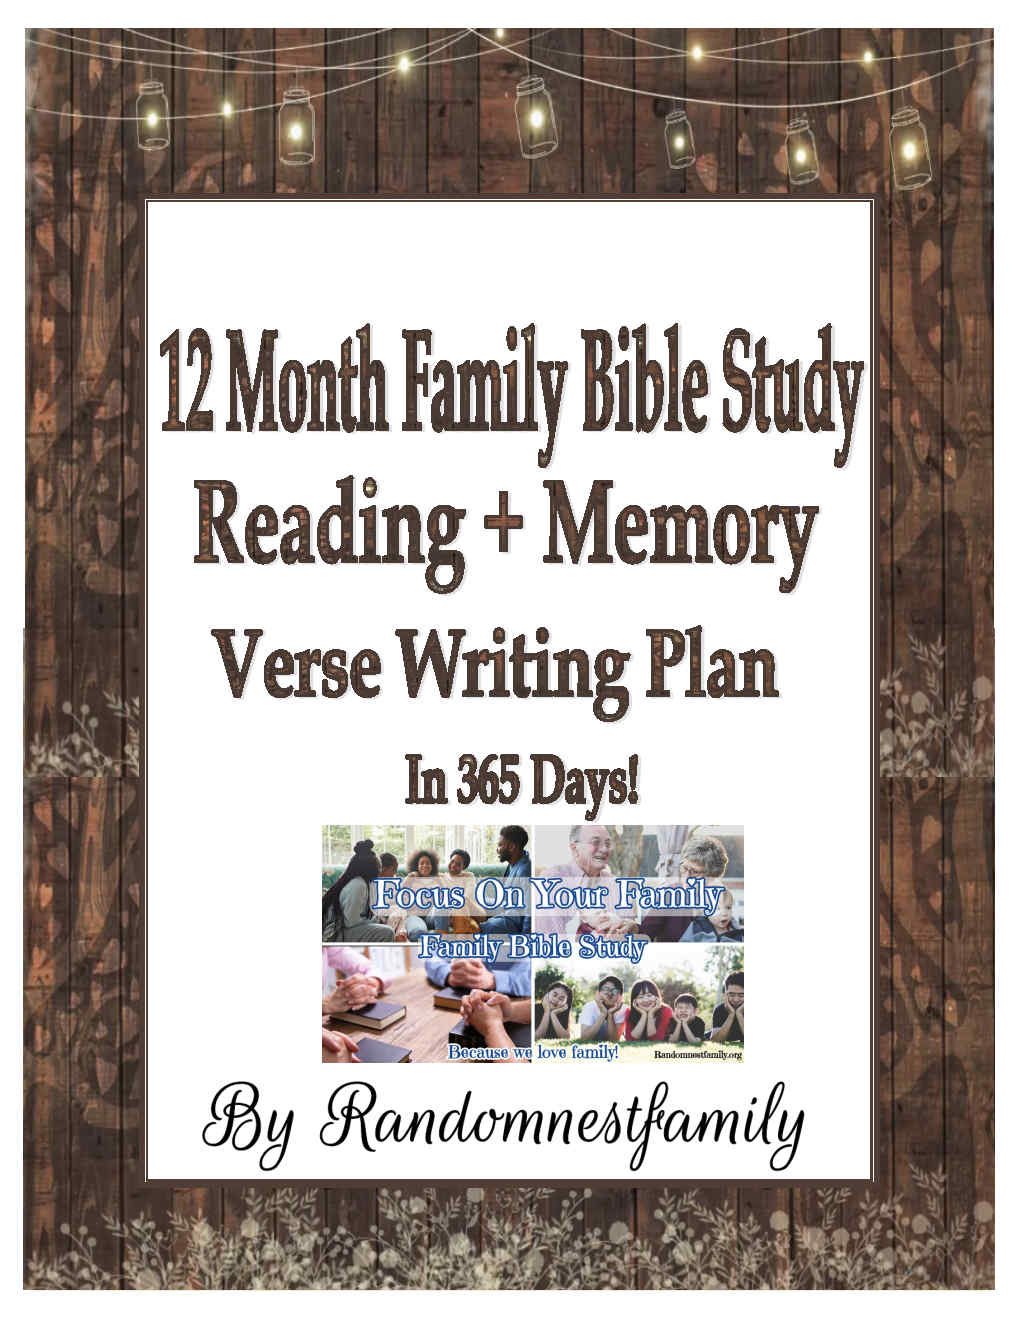 12 month family Bible Study Plan @randomnestfamily.org